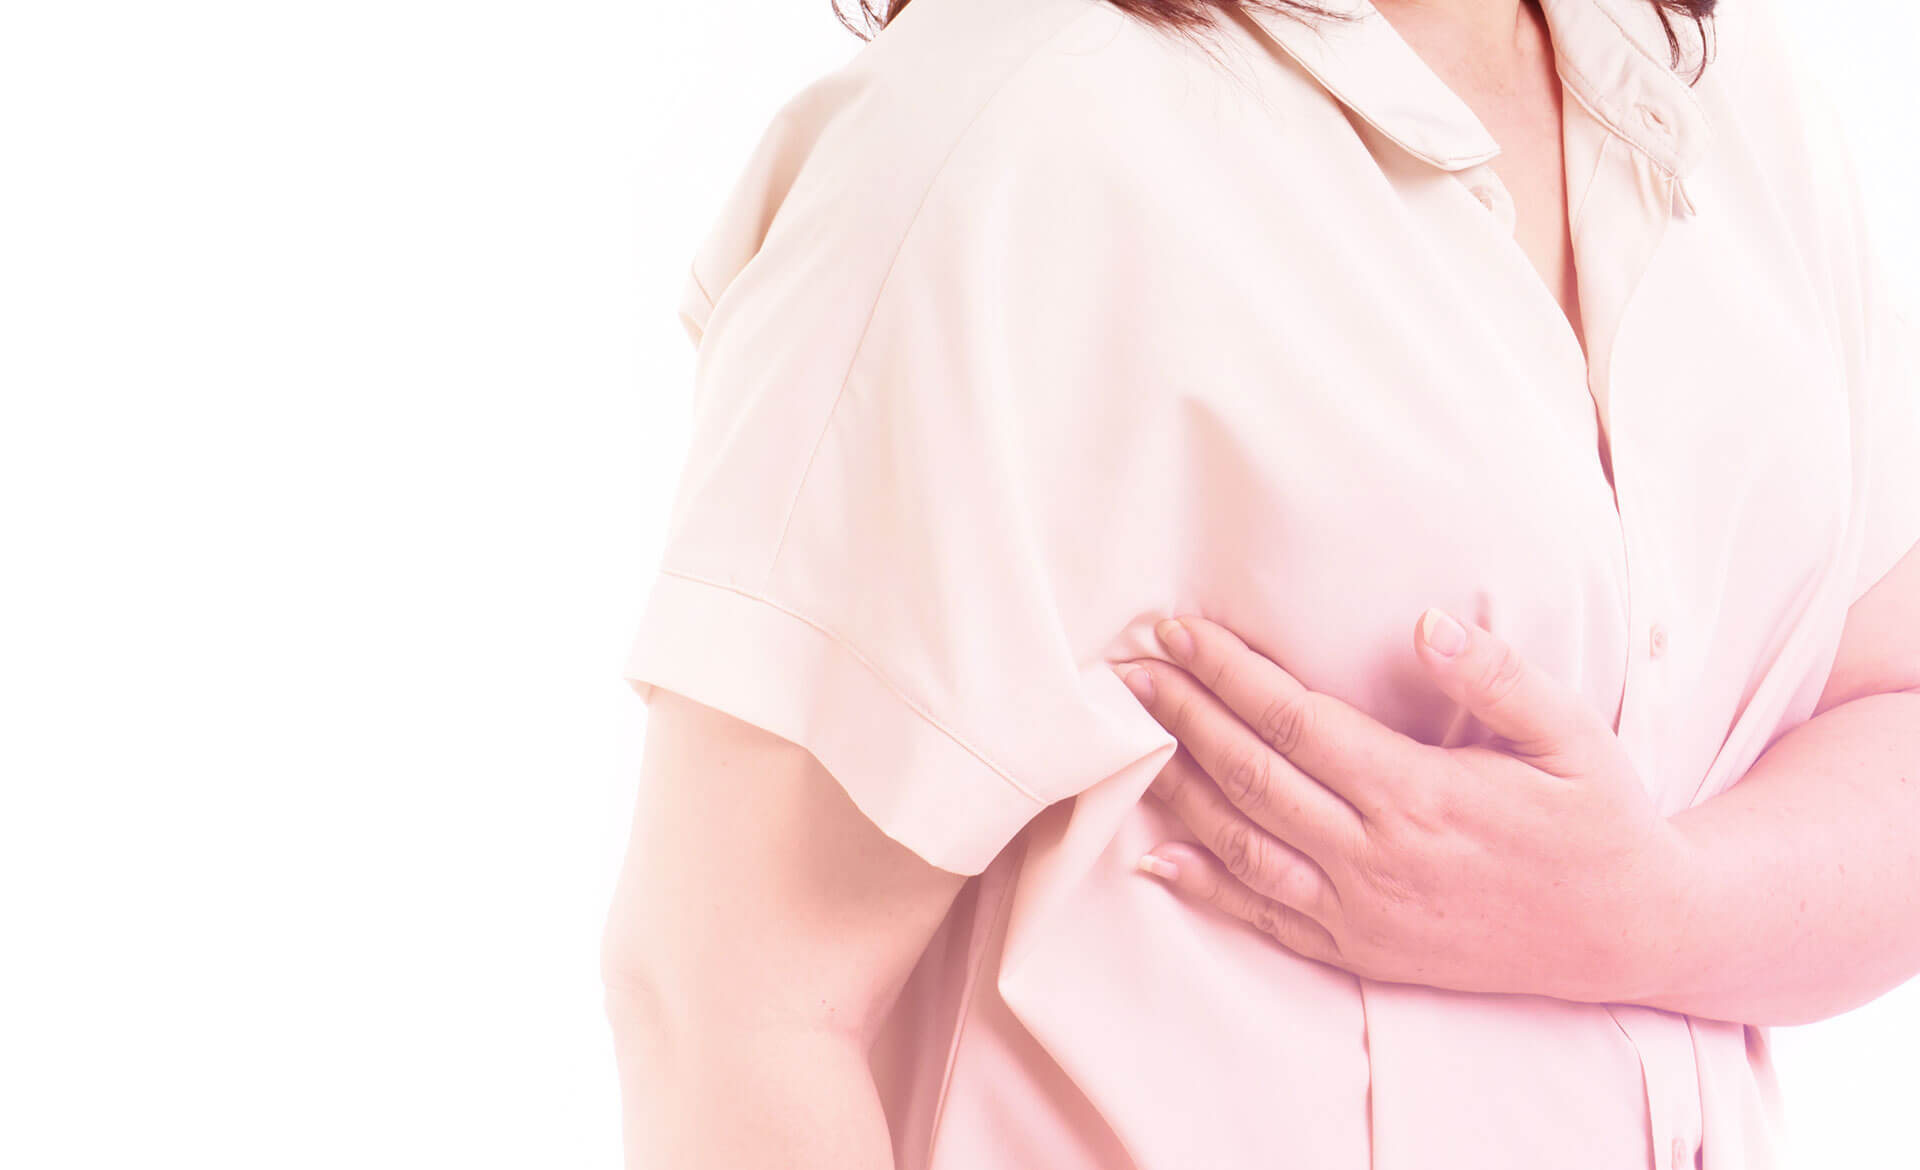 Quais são as lesões benignas de mama que aparecem na biópsia de mama?